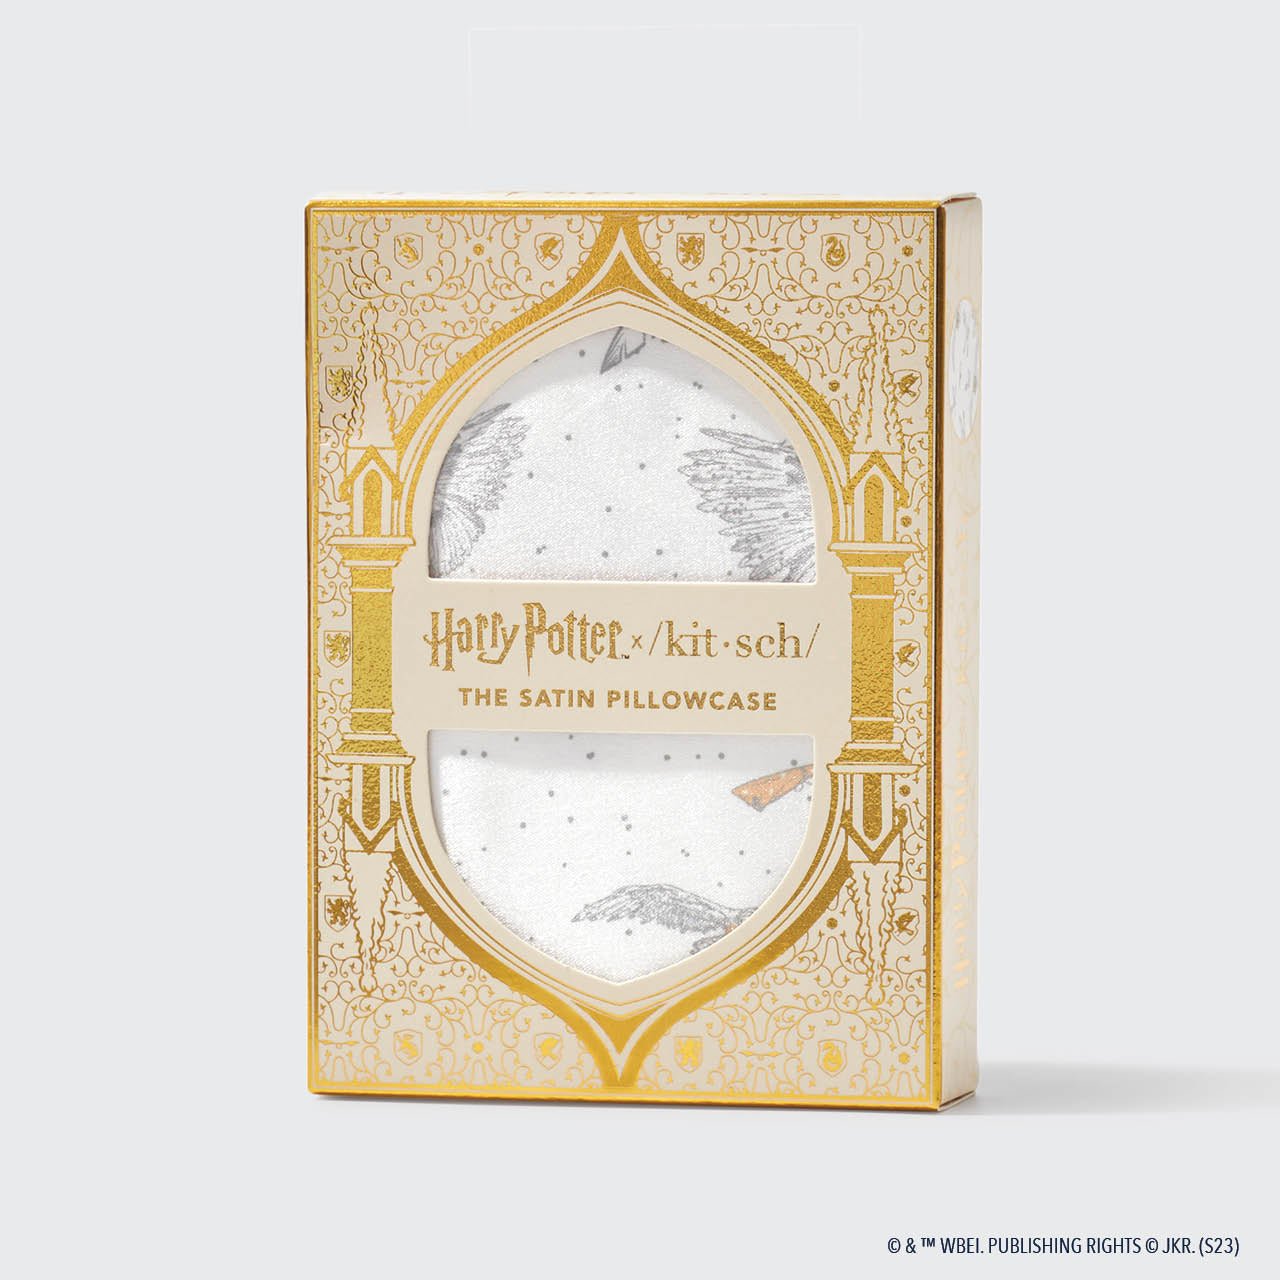 Pacchetto da collezione Harry Potter x Kitsch